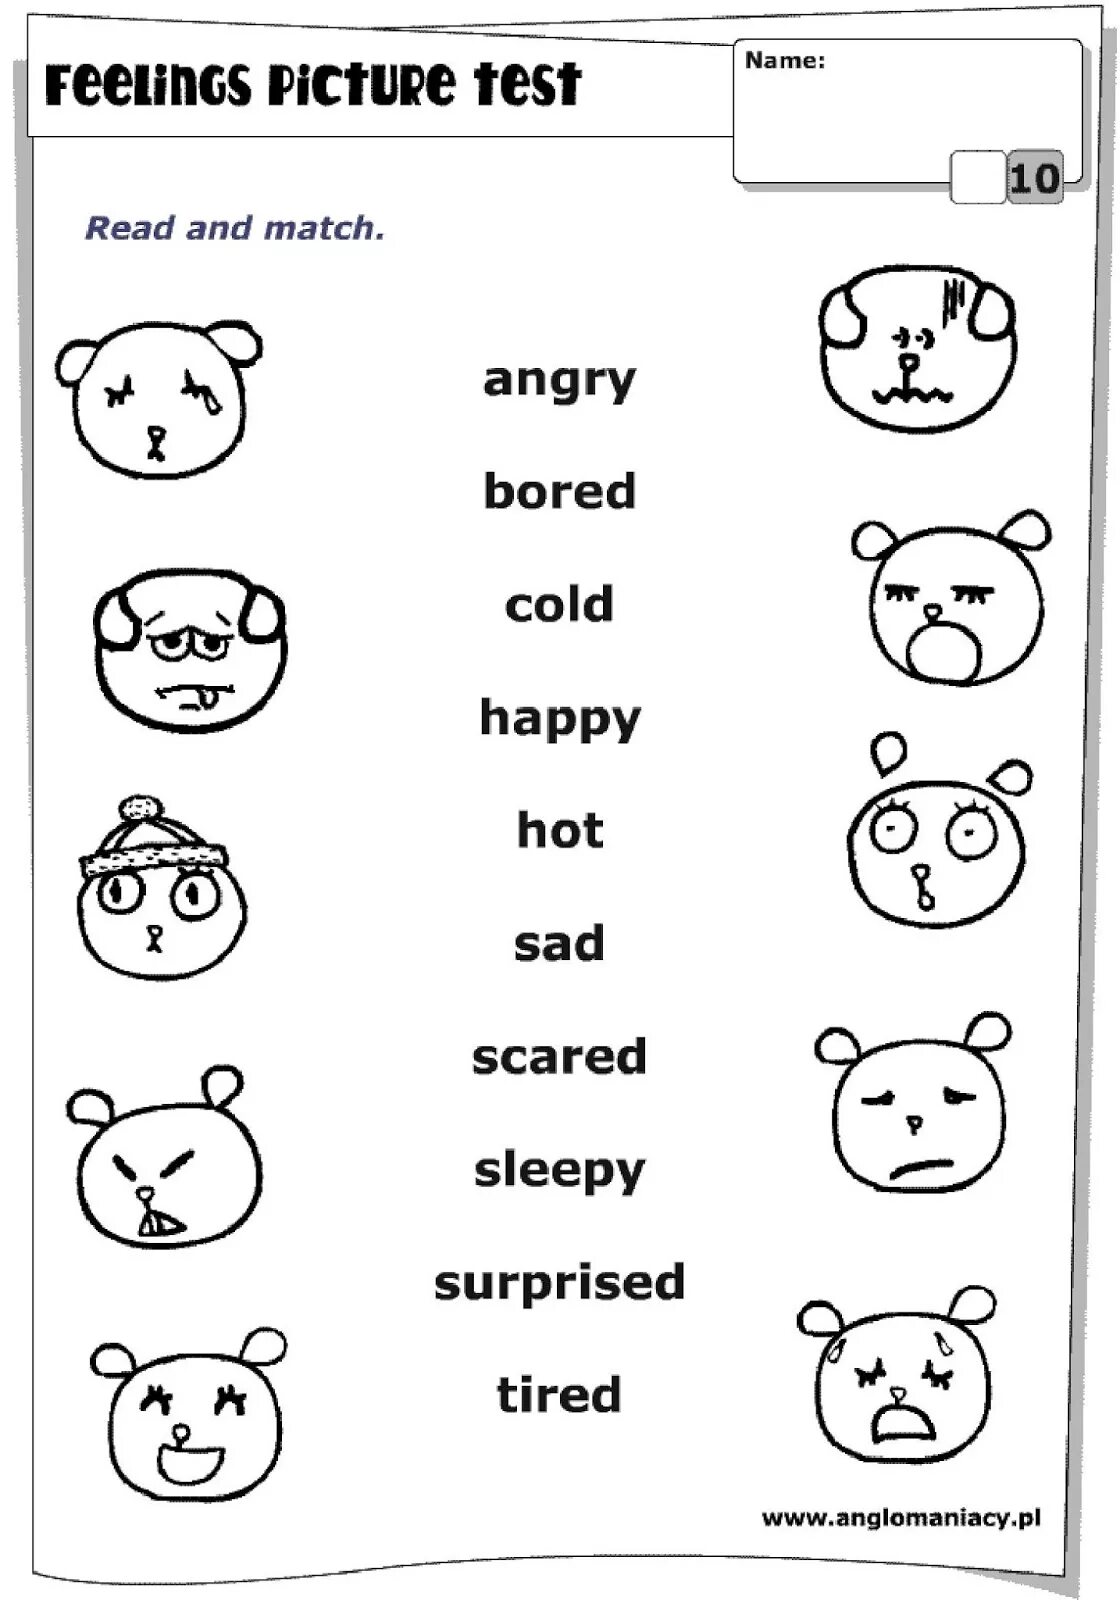 Эмоции на английском задания. Задания по английскому для детей. Emotions задания для детей. Эмоции на английском языке для детей. Feelings tasks